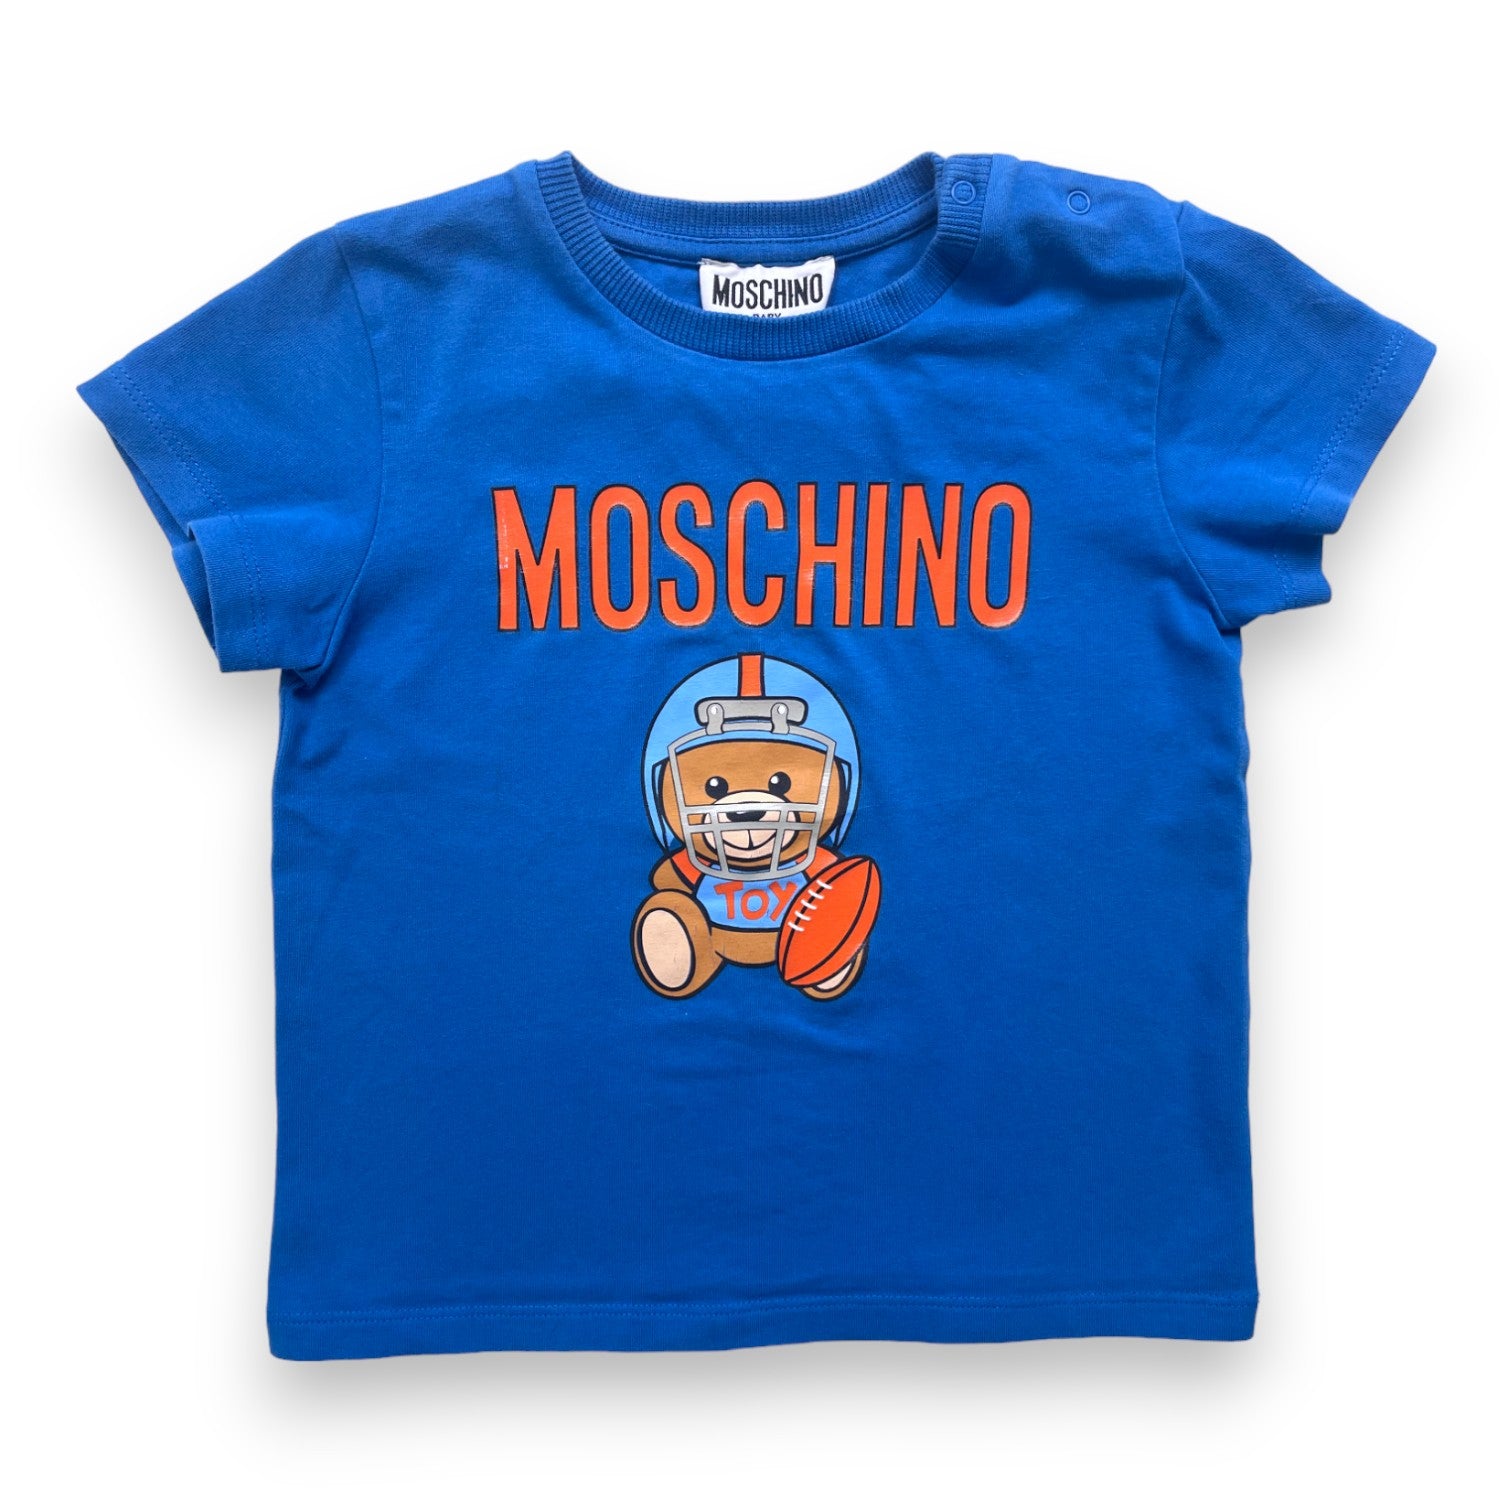 MOSCHINO - T shirt bleu à imprimé - 2 ans